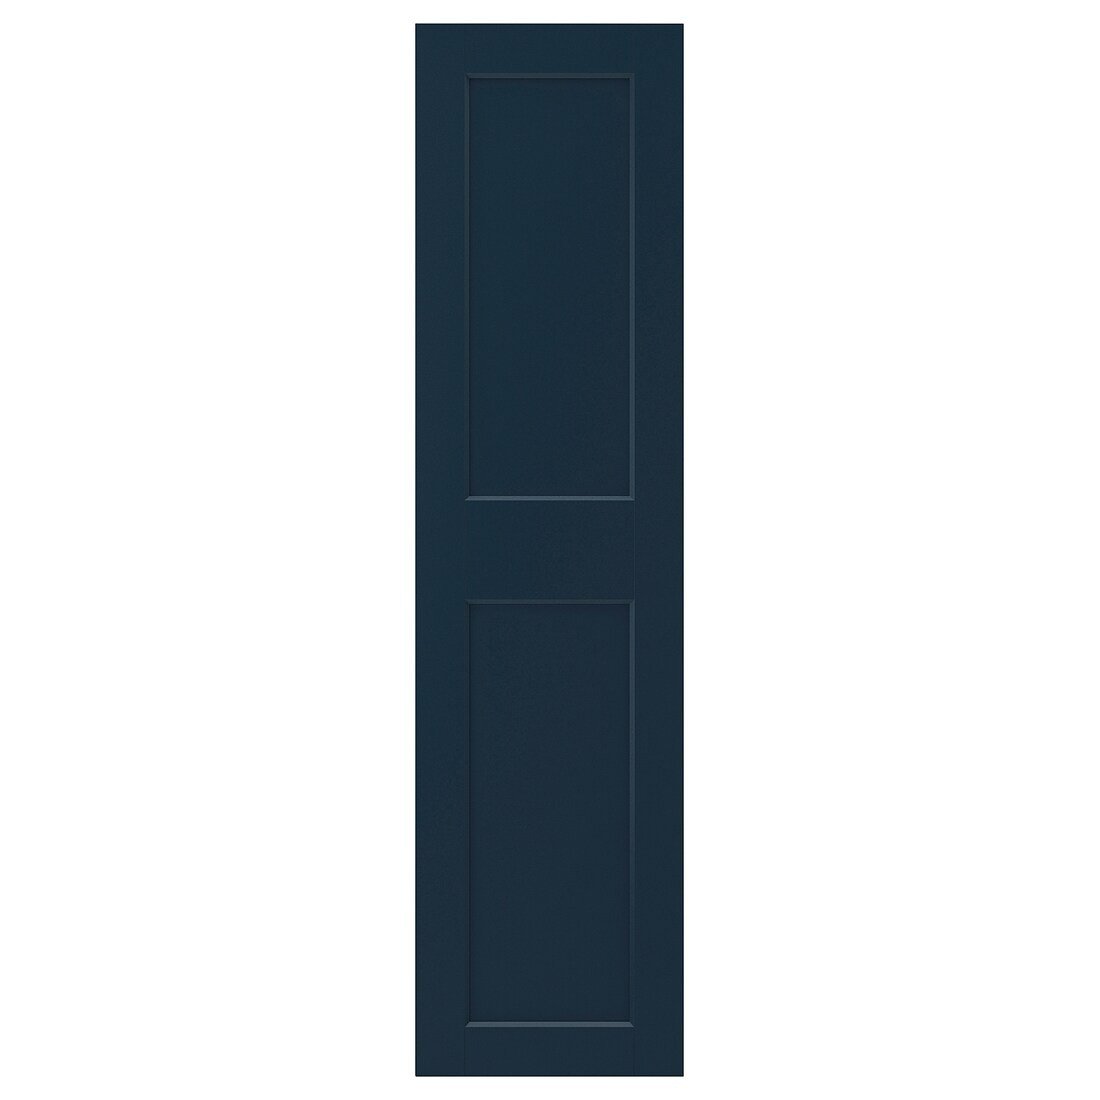 GRIMO ГРІМО Двері, темно-синій, 50x195 cм